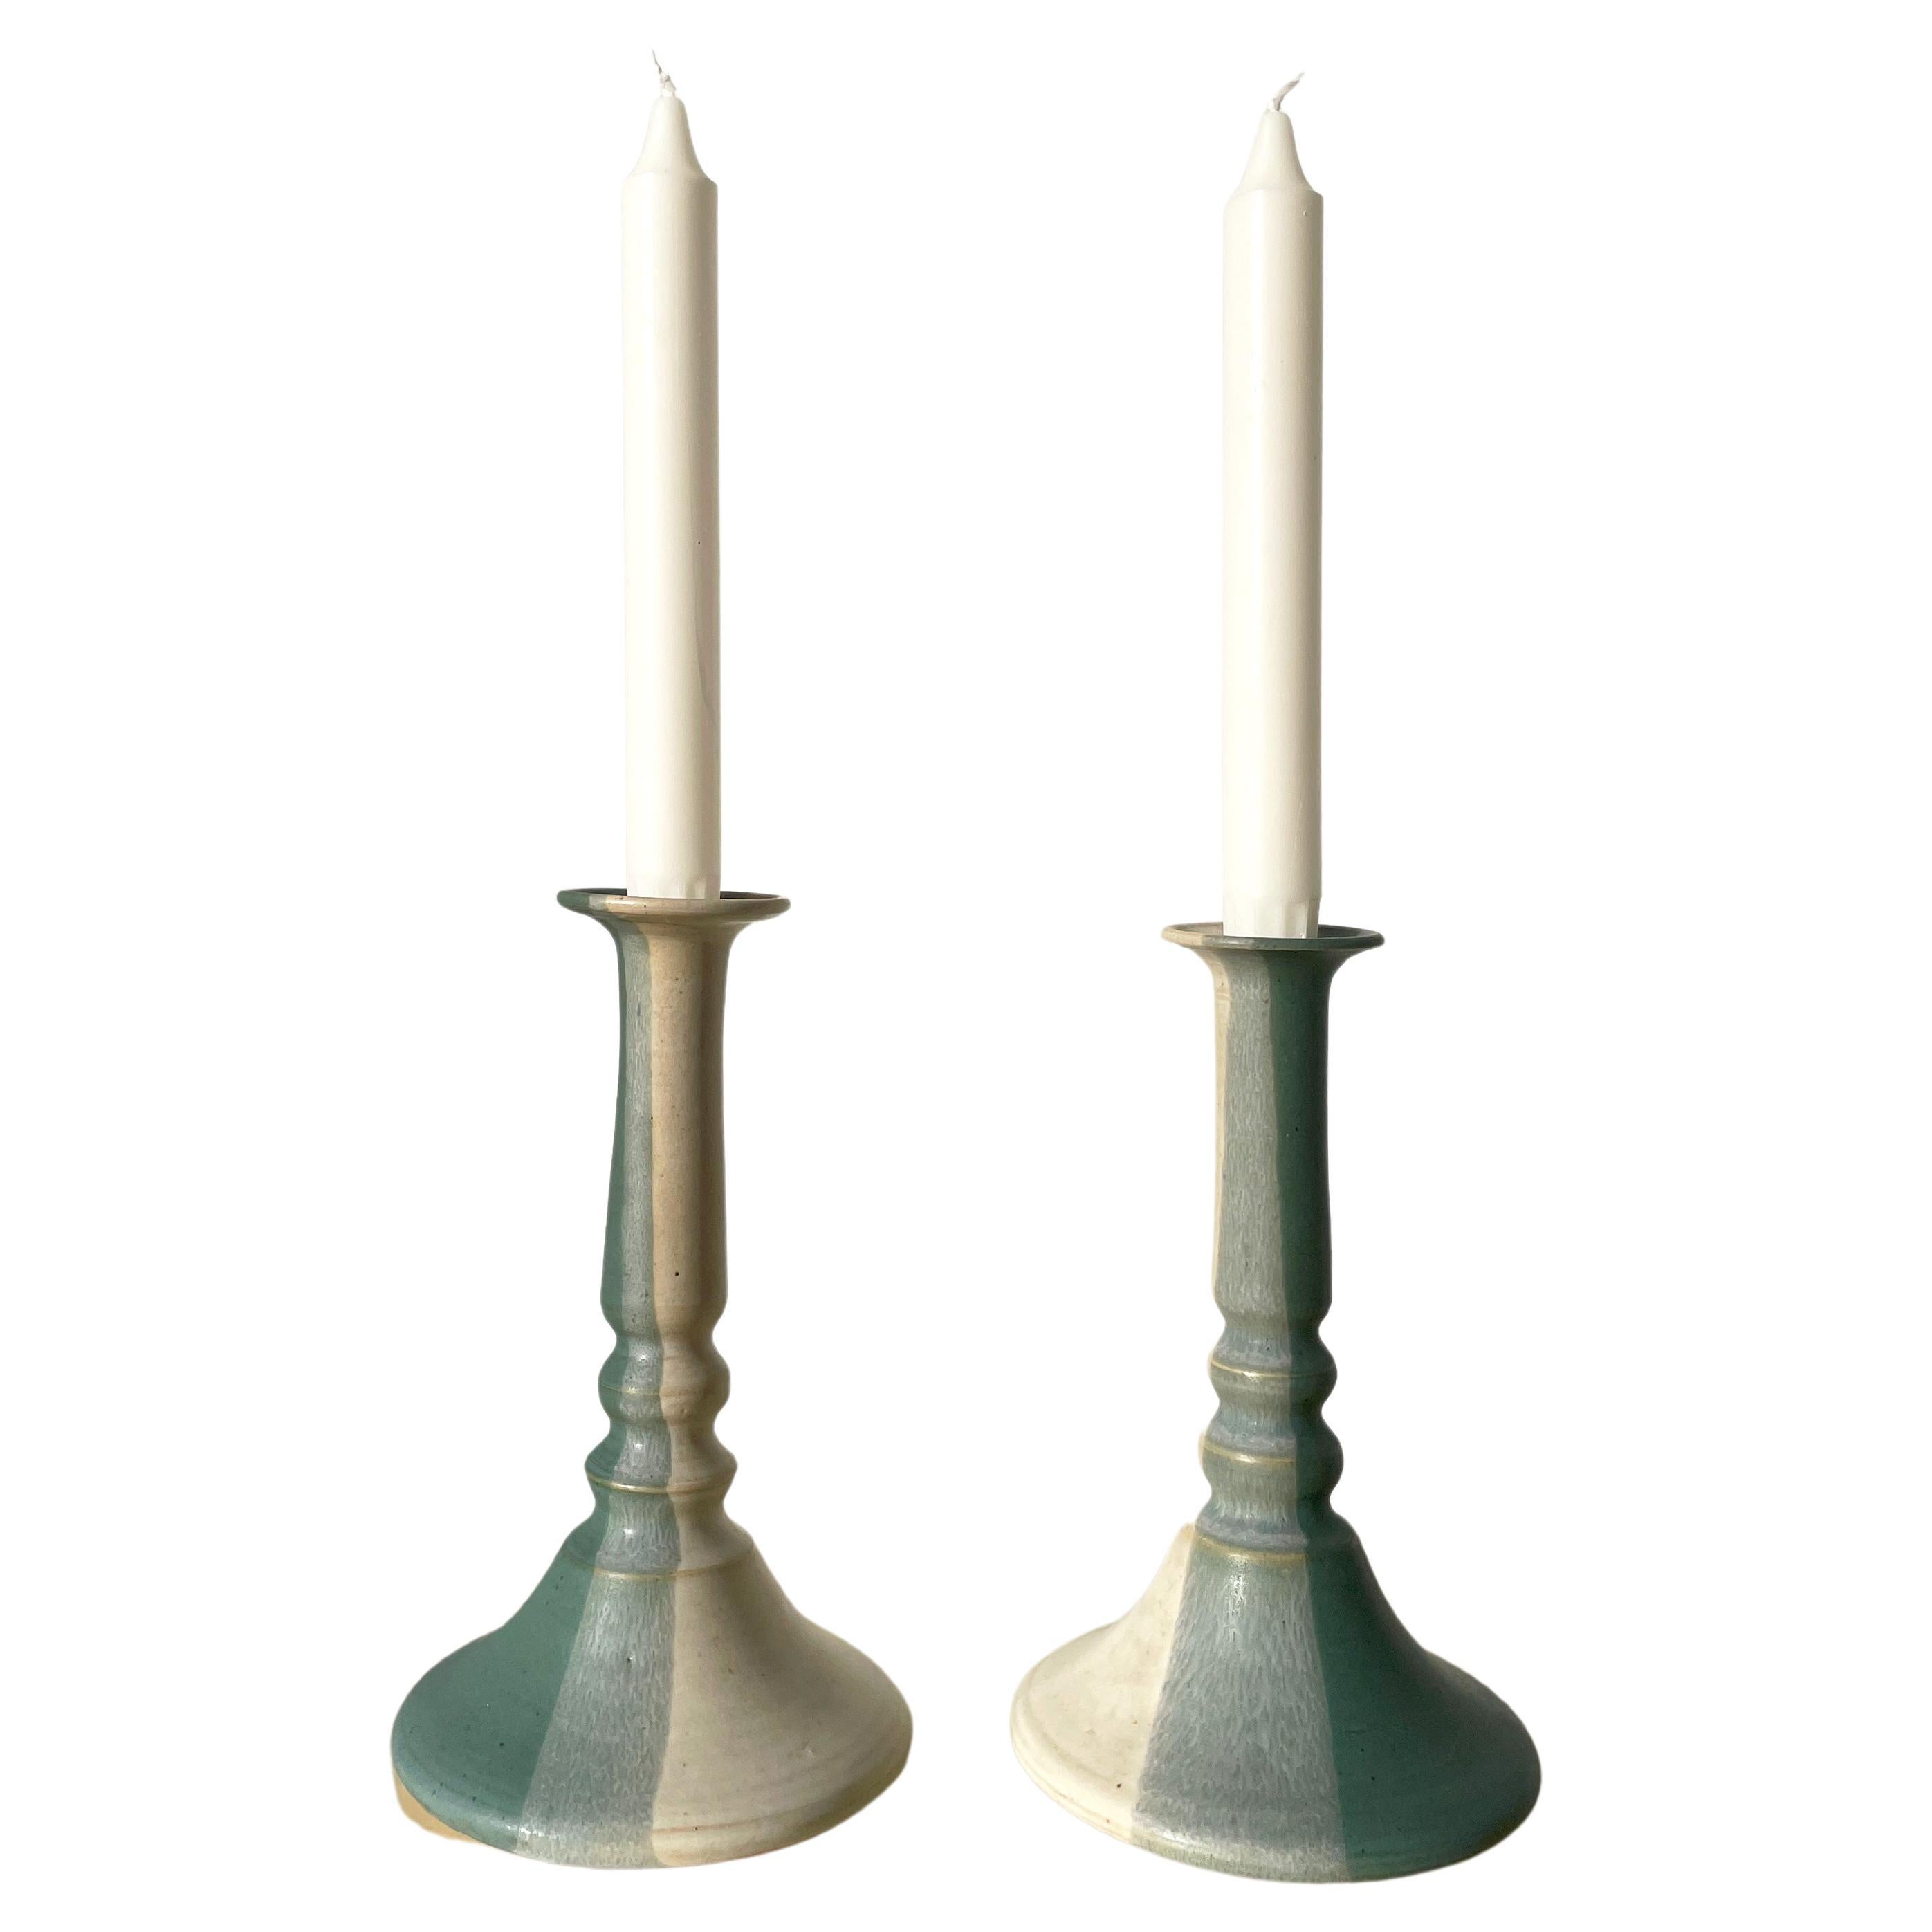 Aqua, Green, Light Beige Ceramic Candle Holders, 1970s